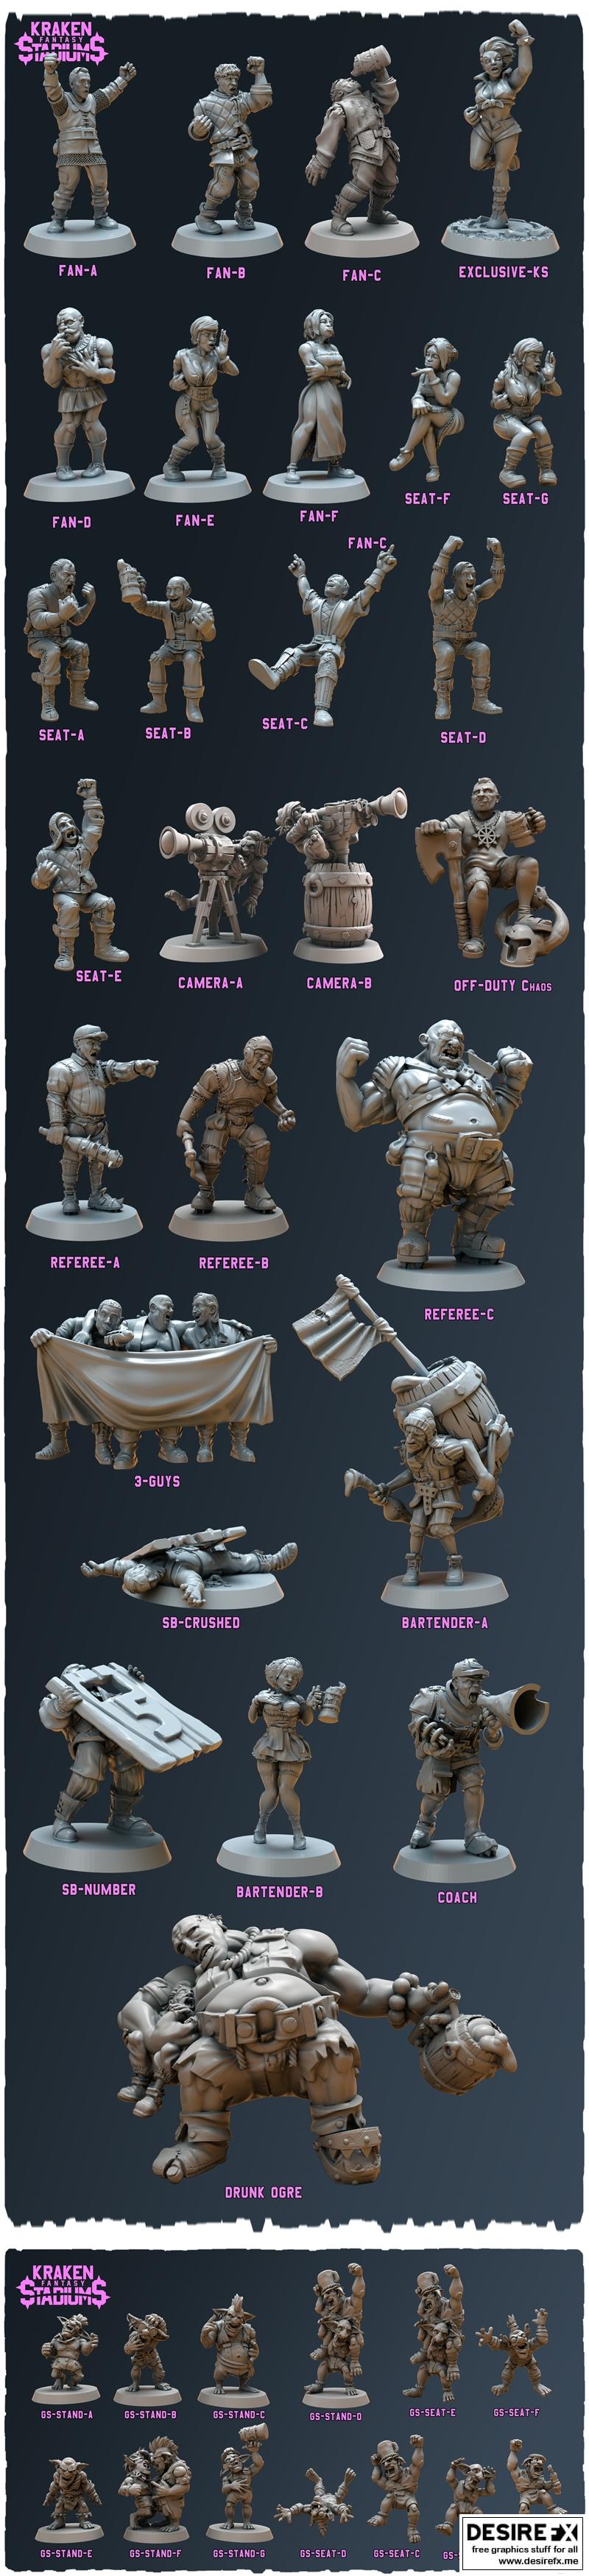 Desire FX 3d models | Kraken Fantasy Stadium Miniatures Pack – 3D Print ...